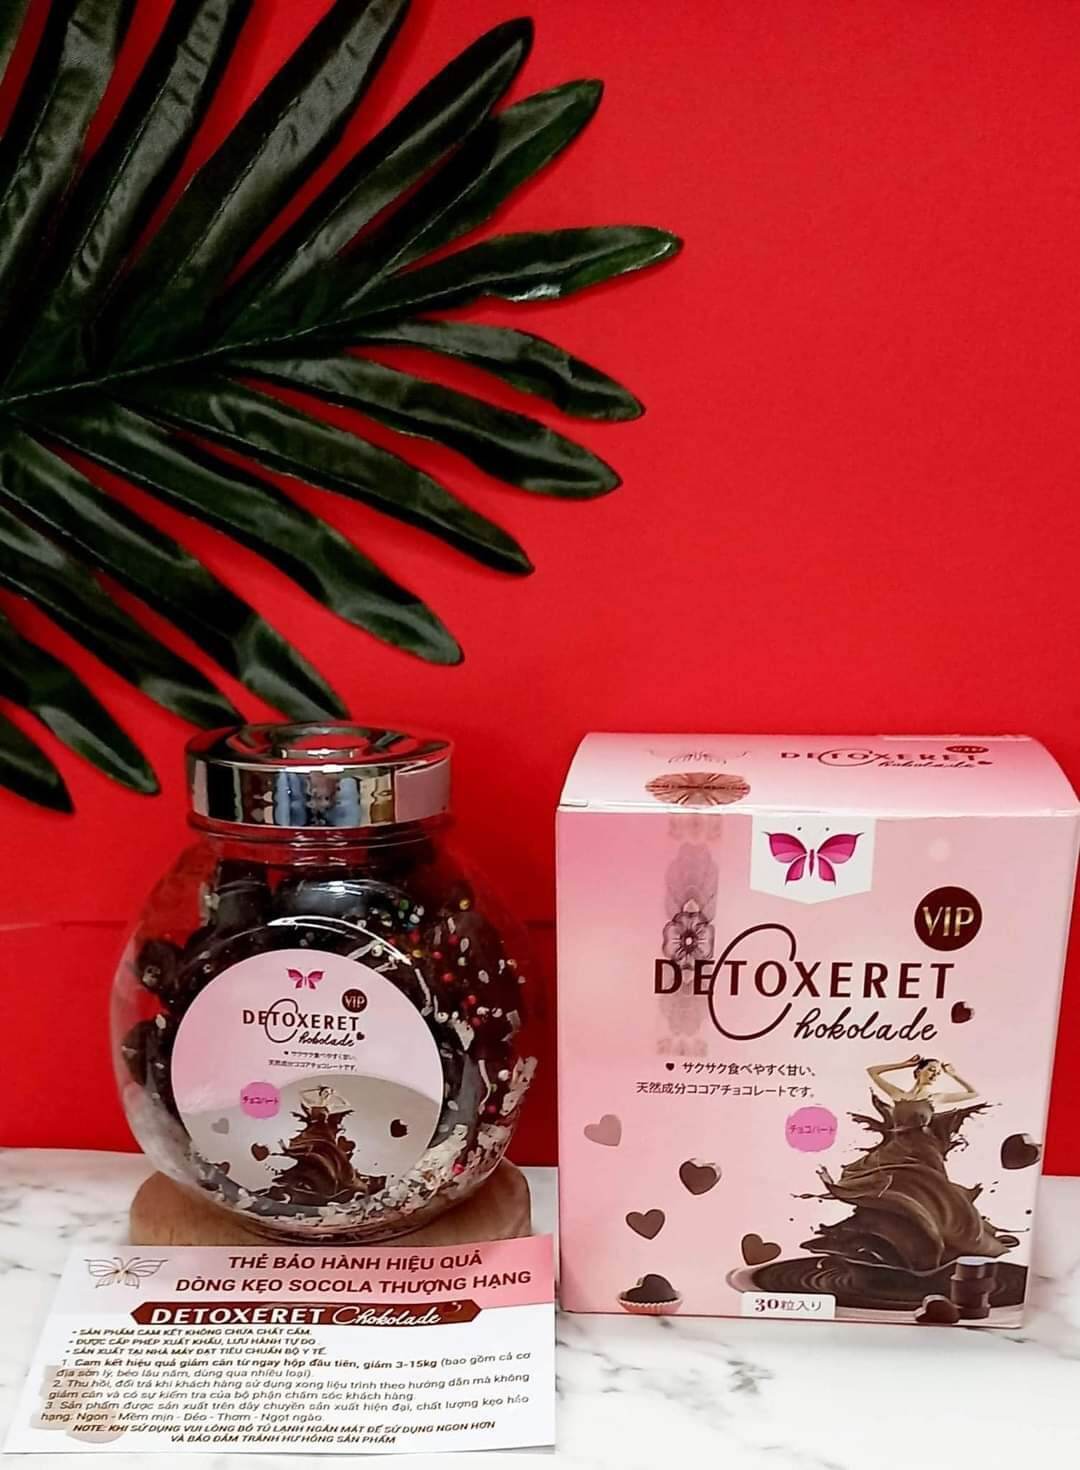 Socola giảm cân Detoxeret Chokolade chính hãng xuất khẩu Nhật Bản. Combo 2 hộp. thumbnail